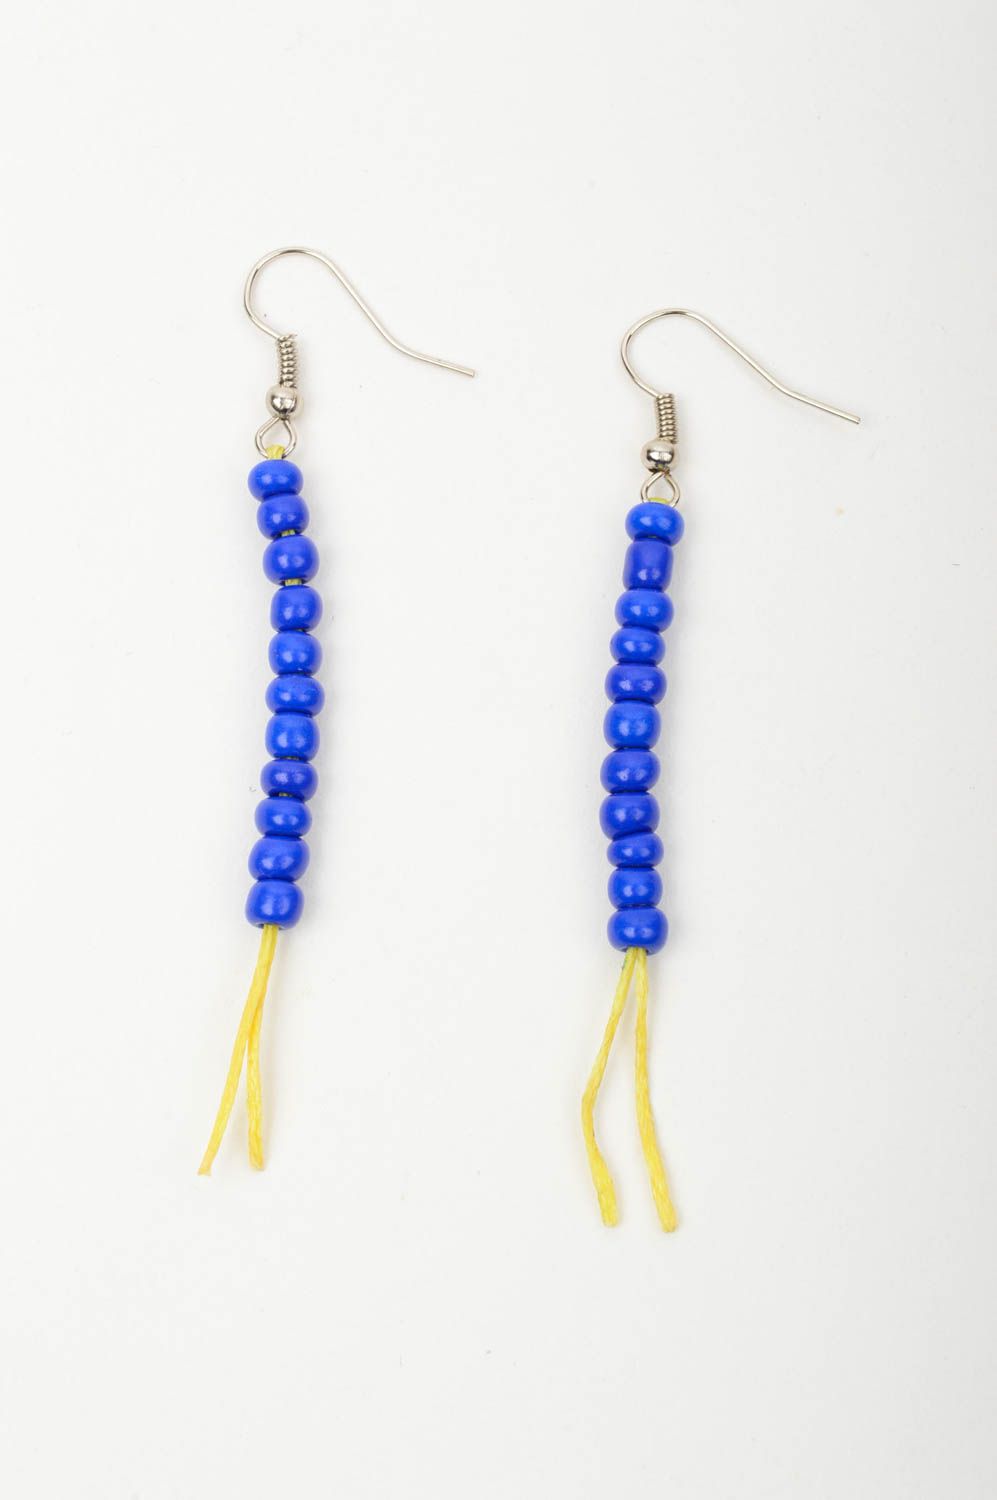 Handmade beads earrings designer earrings beaded earrings for girl gift ideas photo 3